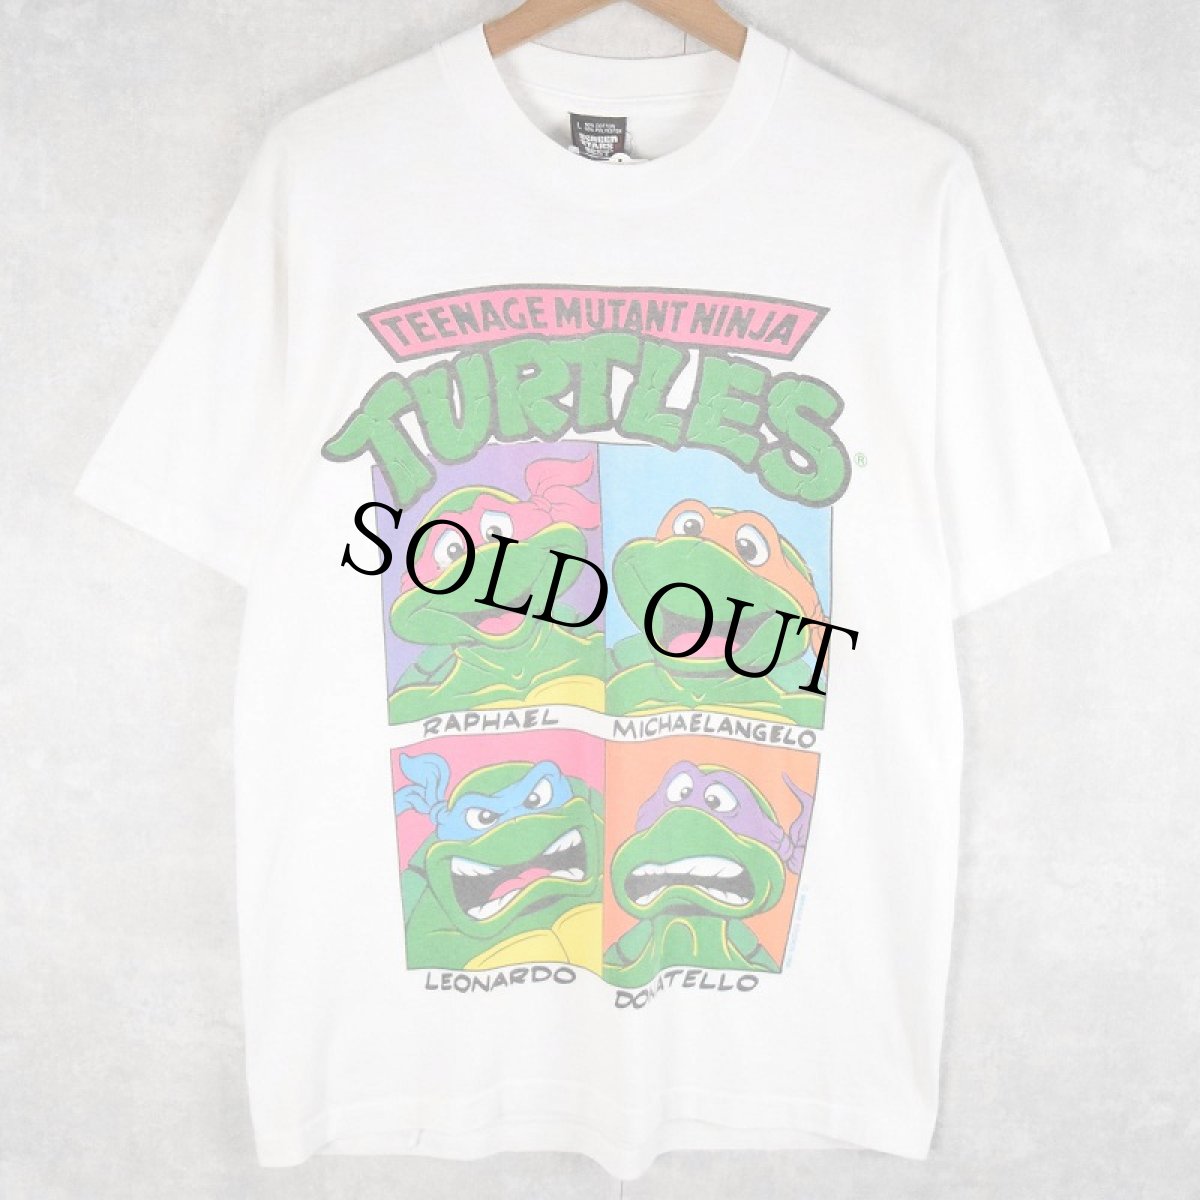 画像1: 90's Teenage Mutant Ninja Turtles USA製 アニメキャラクタープリントTシャツ L (1)